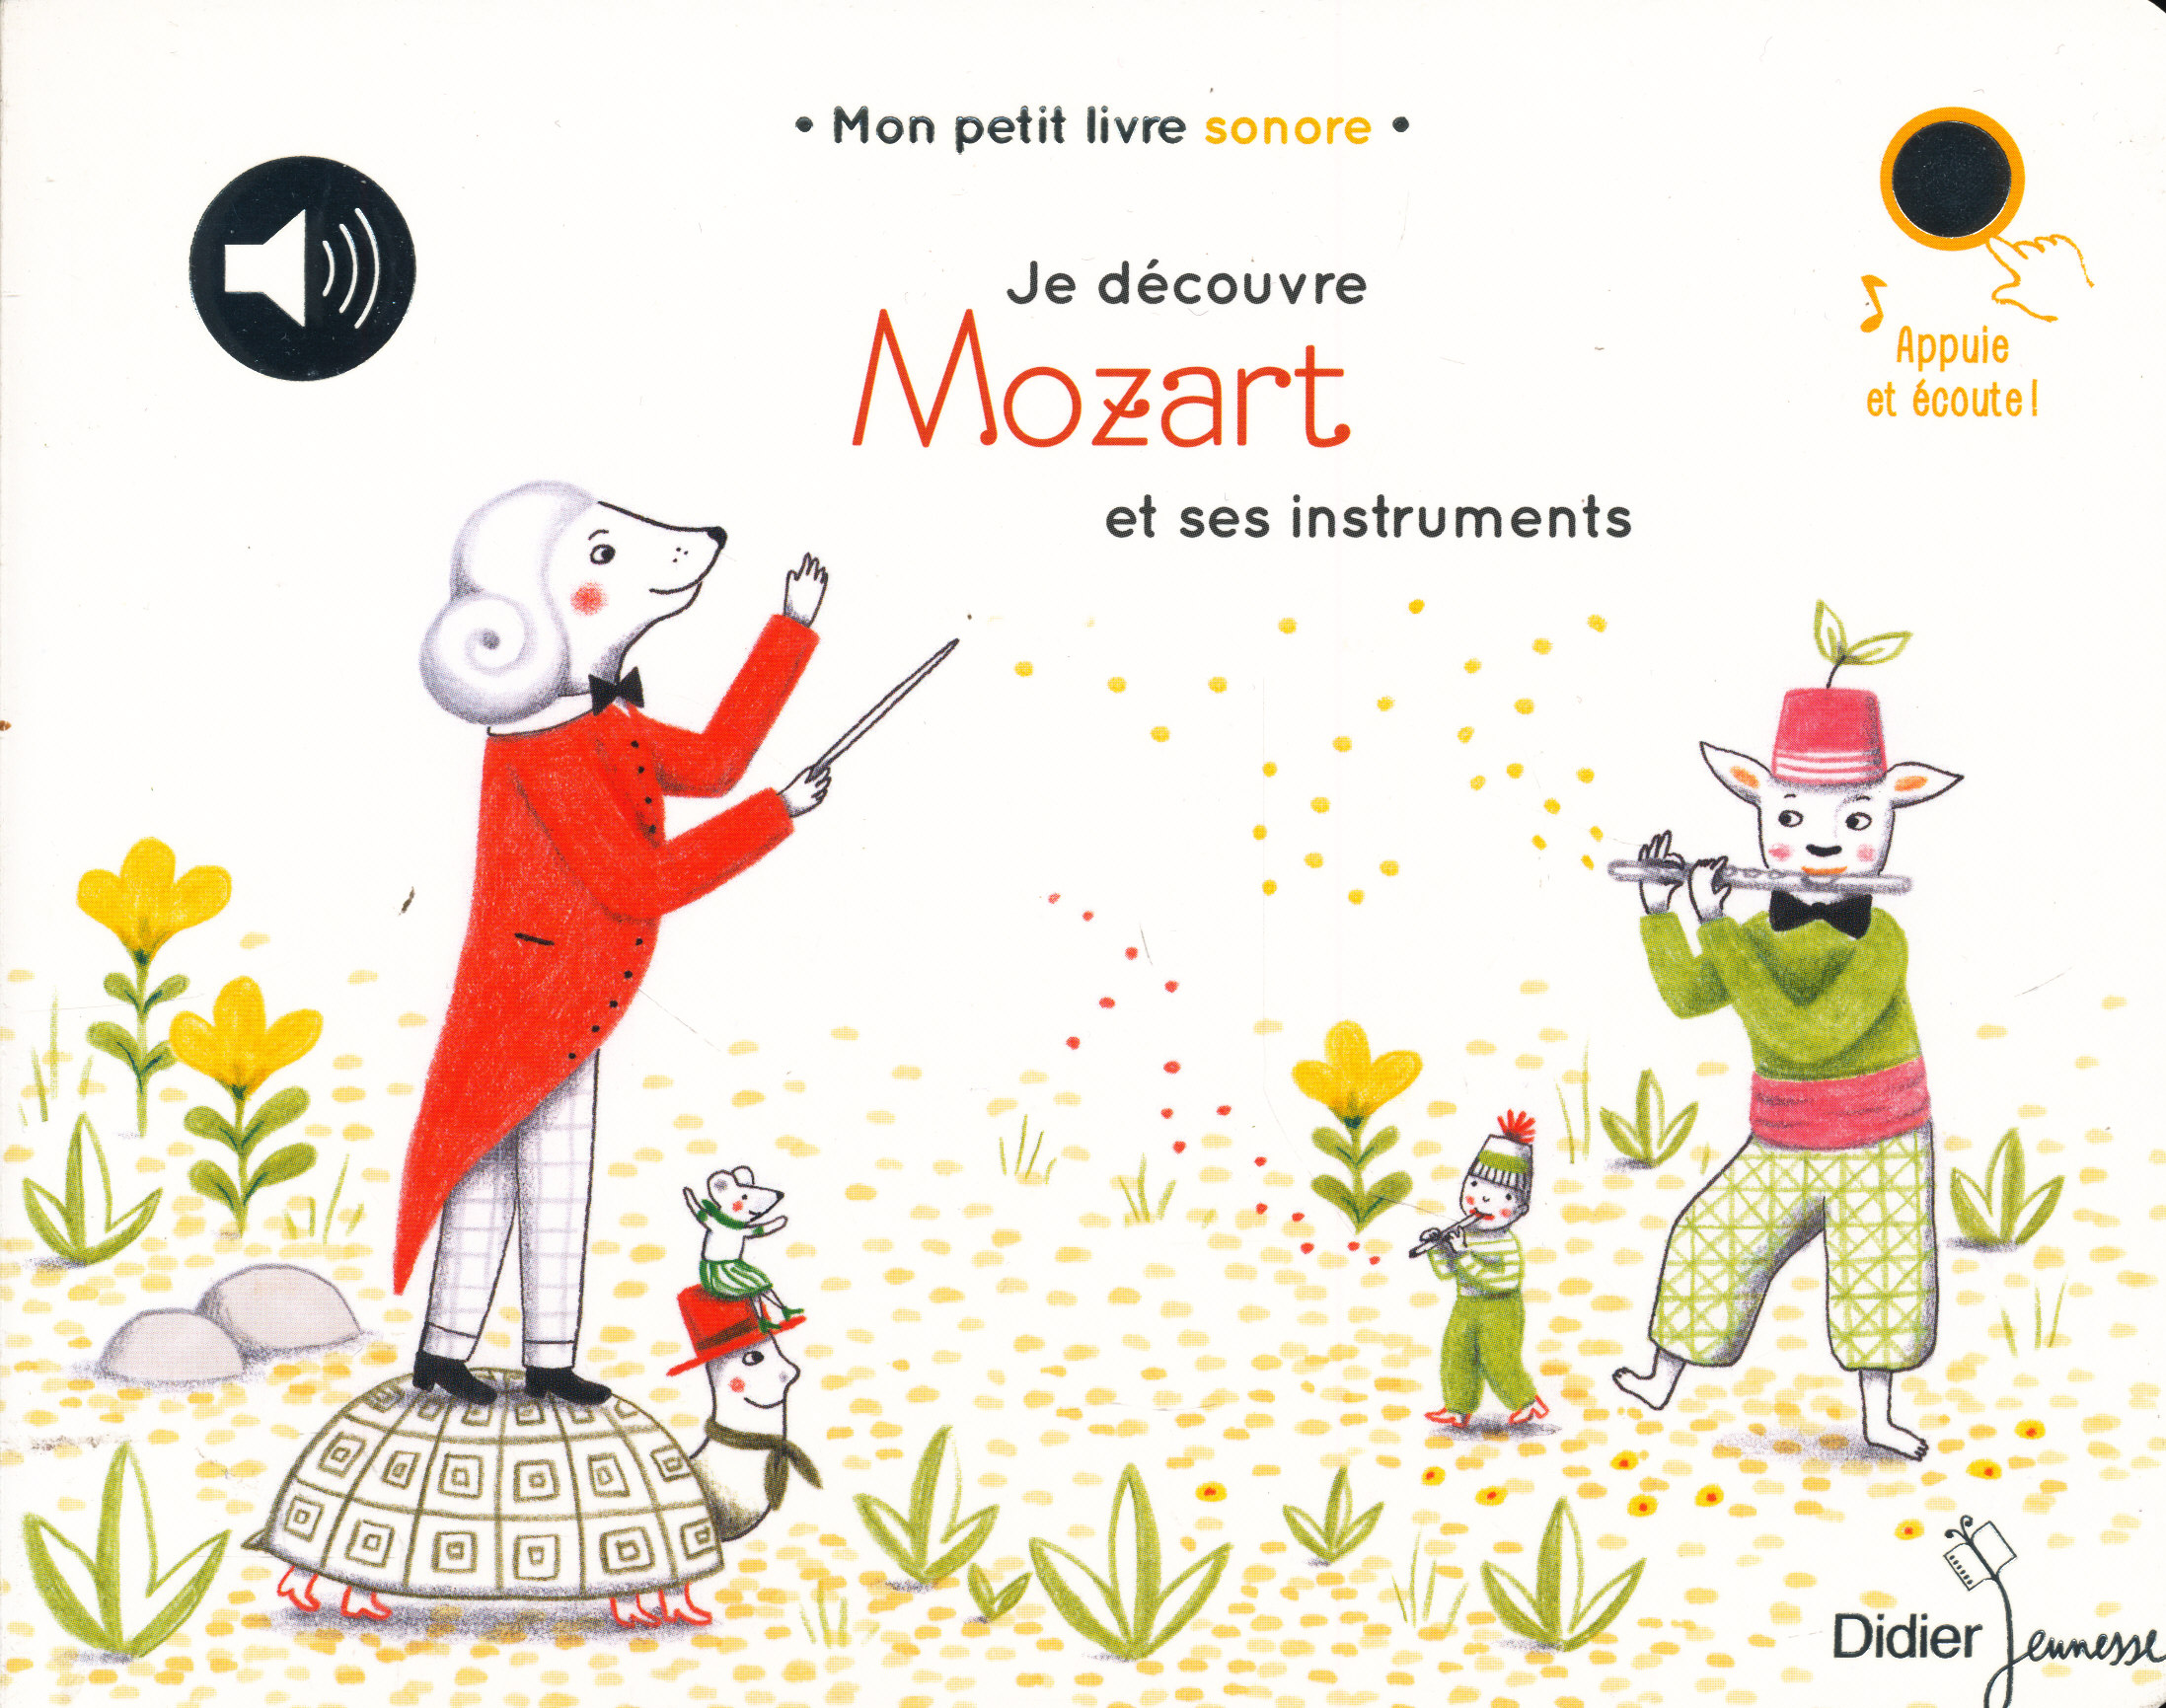 Mon petit Mozart - Livre sonore Grund livre sonore book musique music  classique classical librairie library bébé cartonné baby